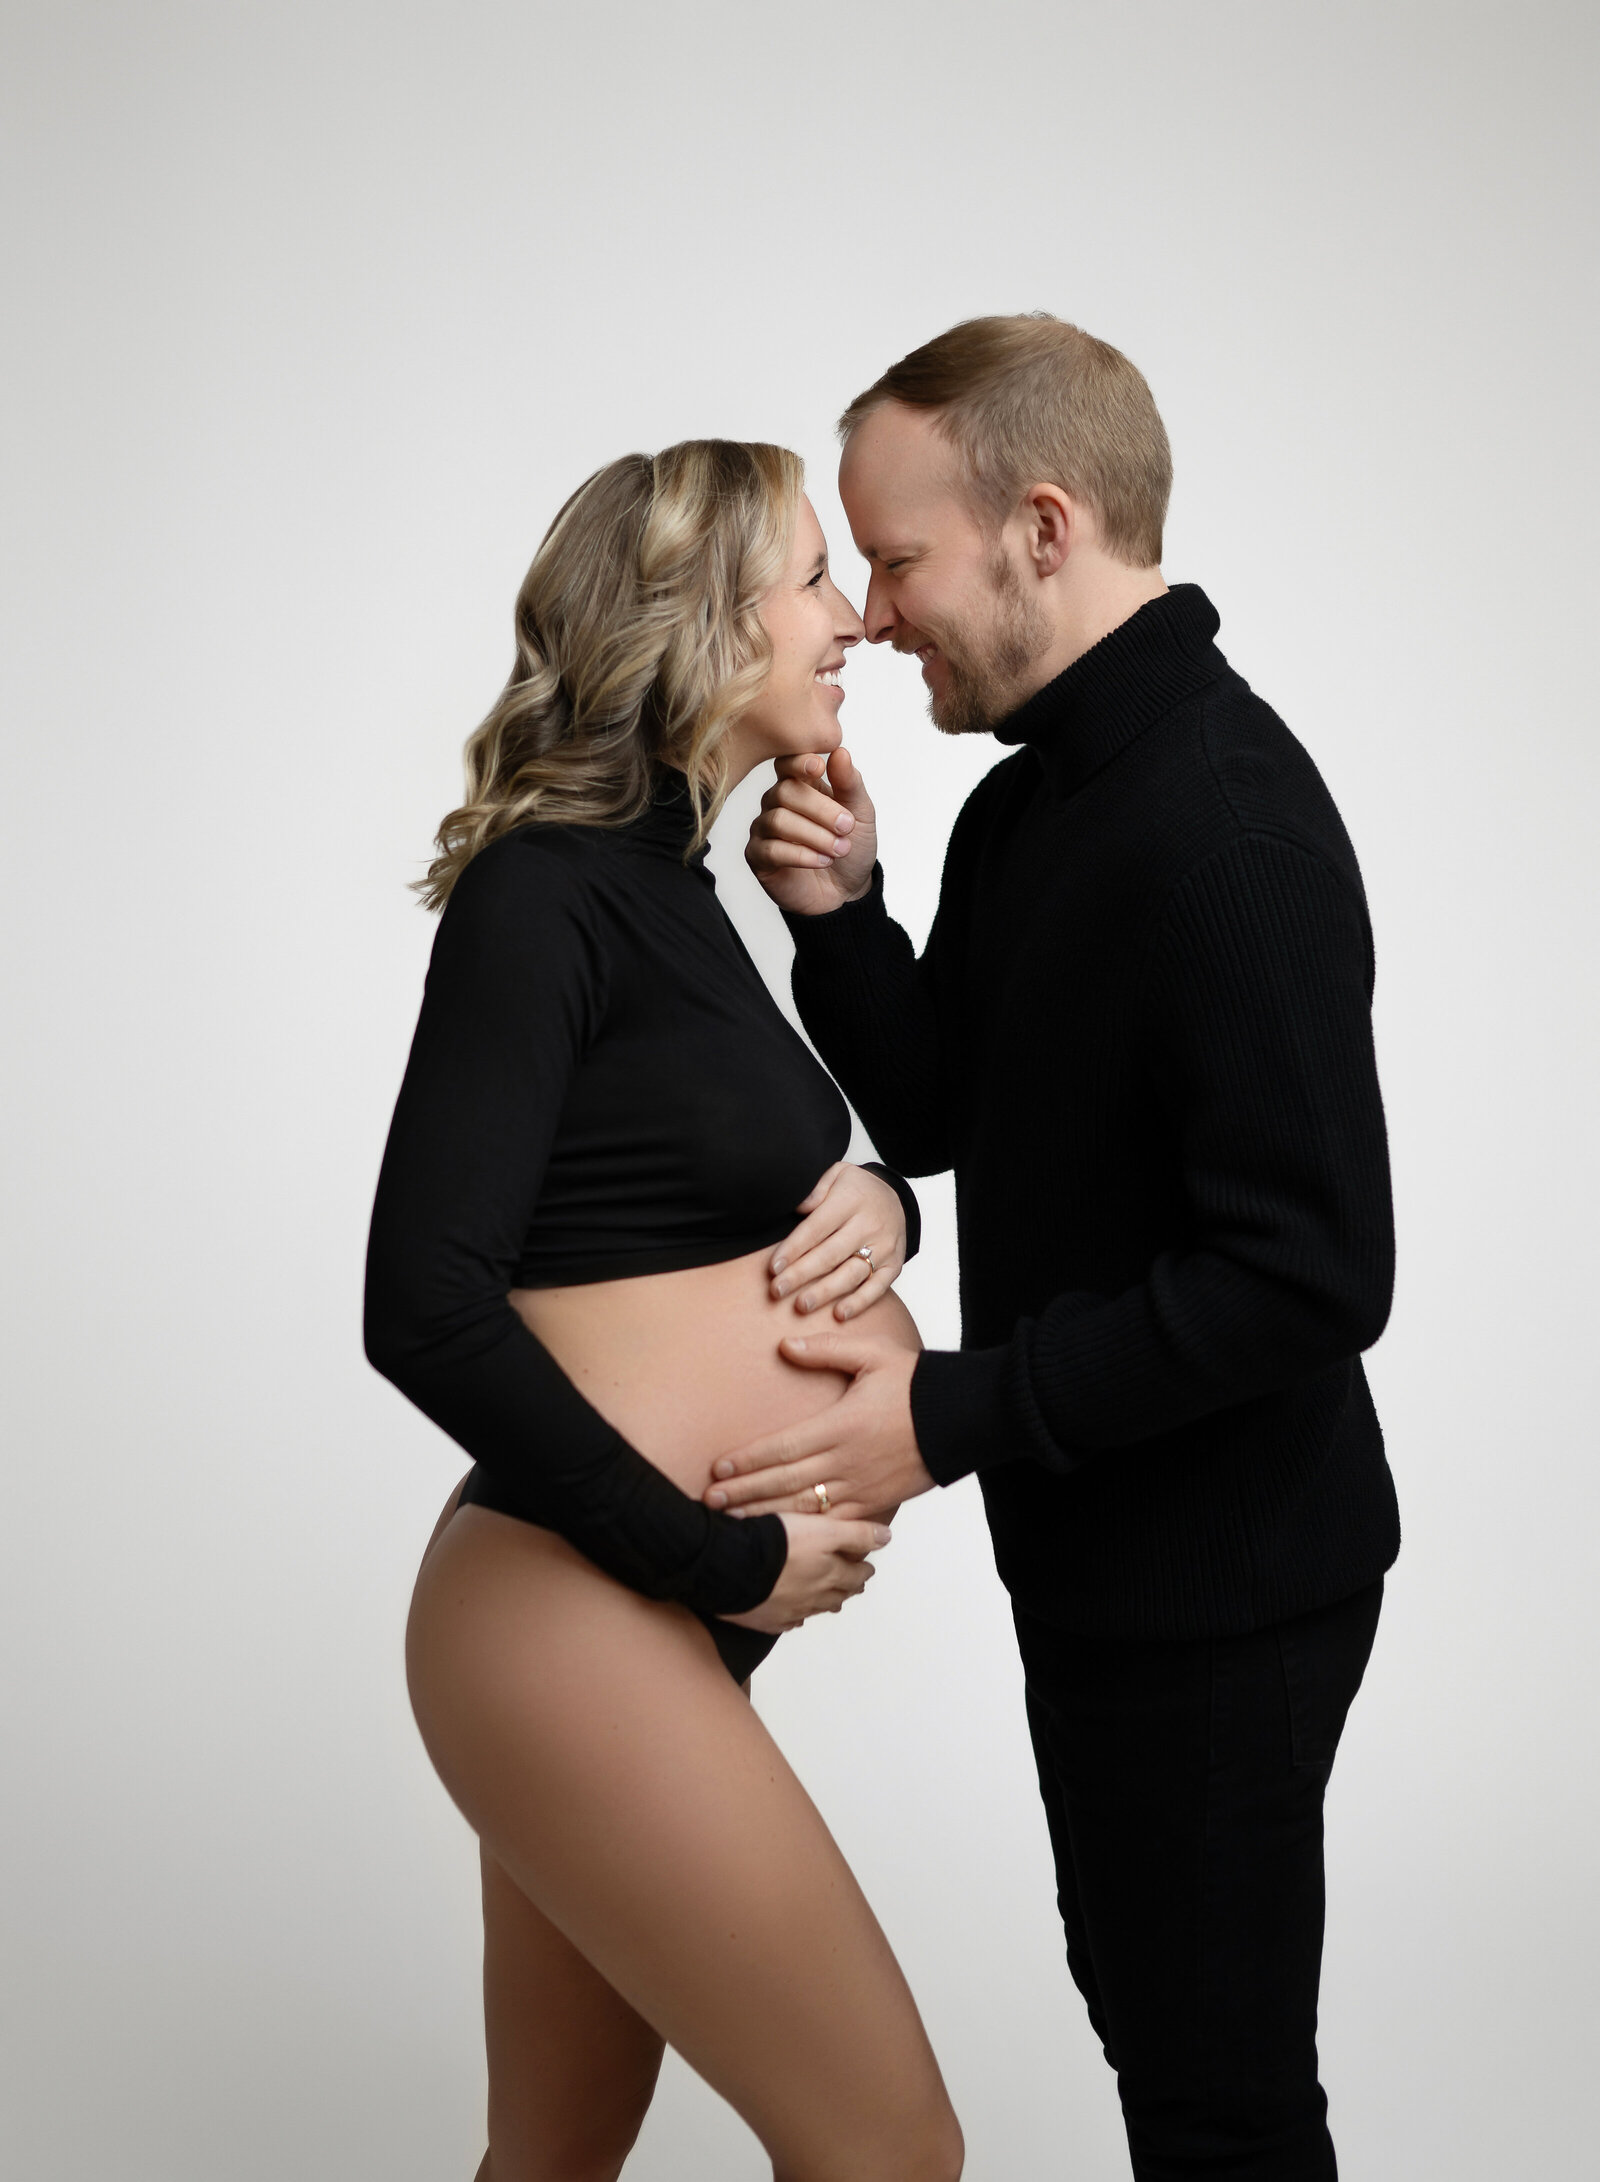 Alpharetta GA pregnancy photoshoot